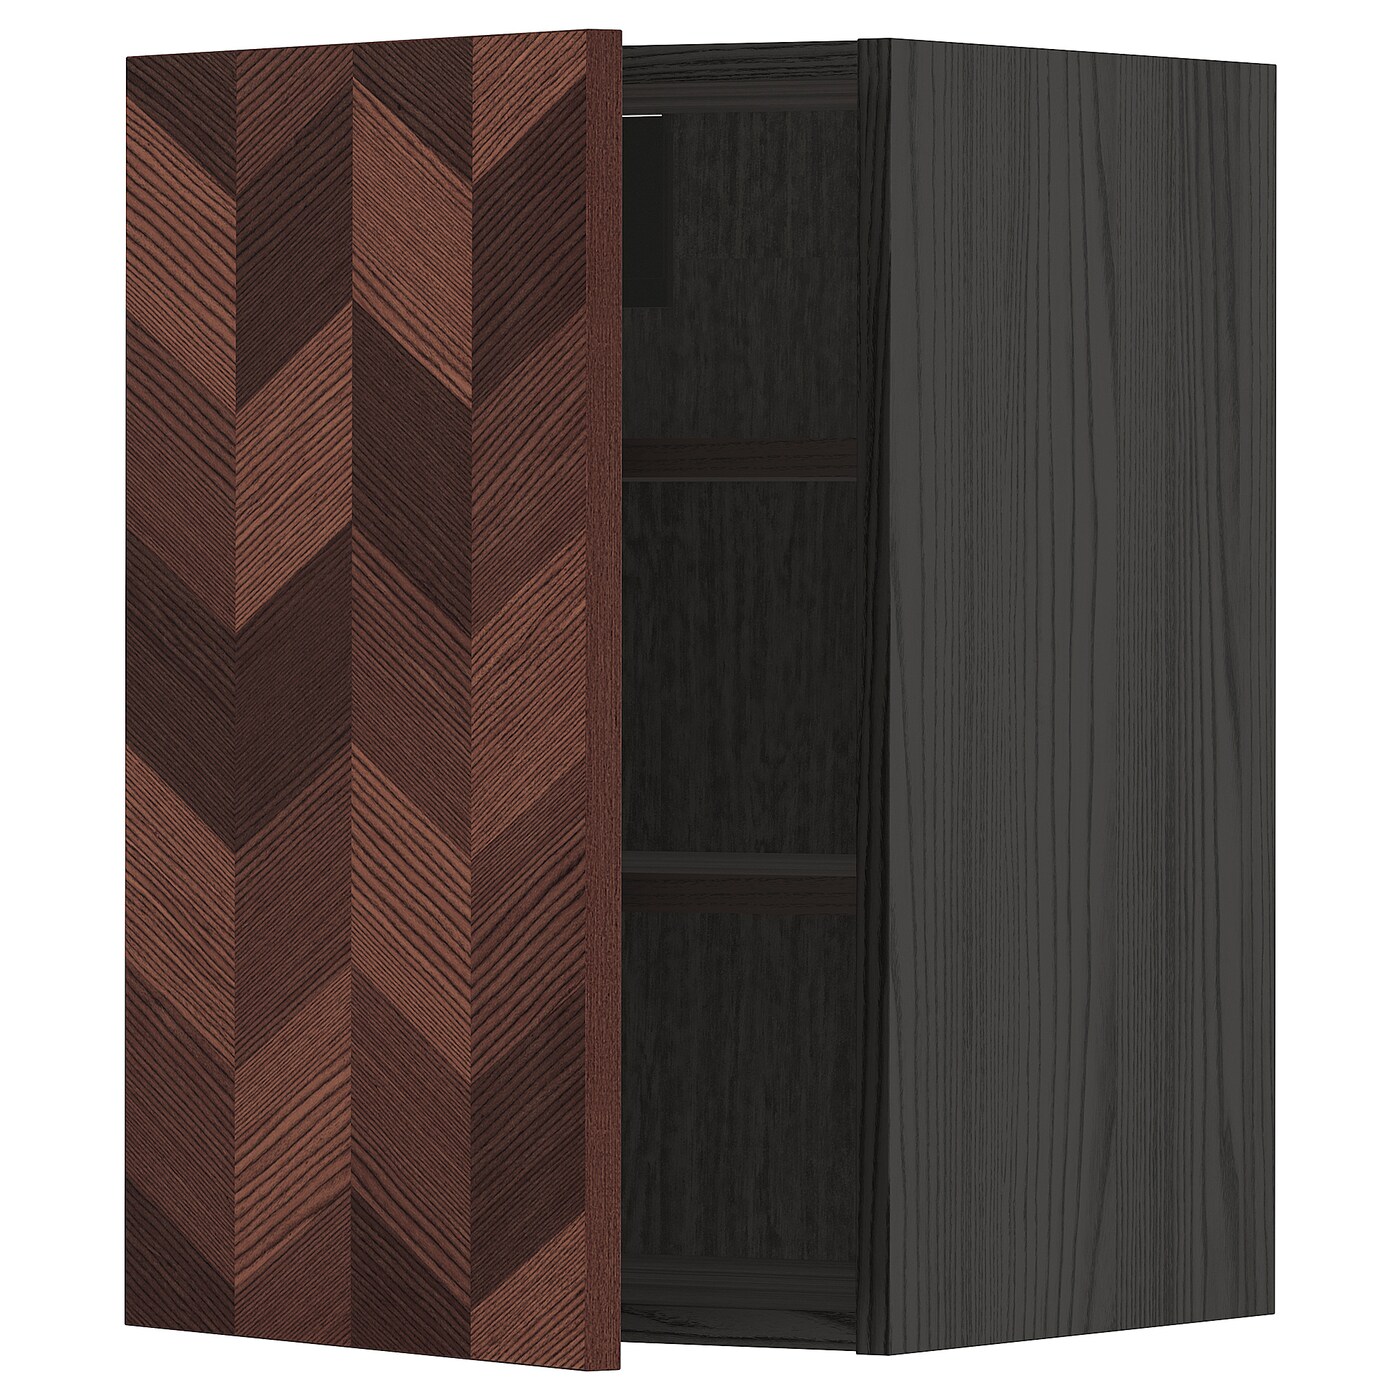 Навесной шкаф с полкой - METOD IKEA/ МЕТОД ИКЕА, 60х40 см, черный/коричневый